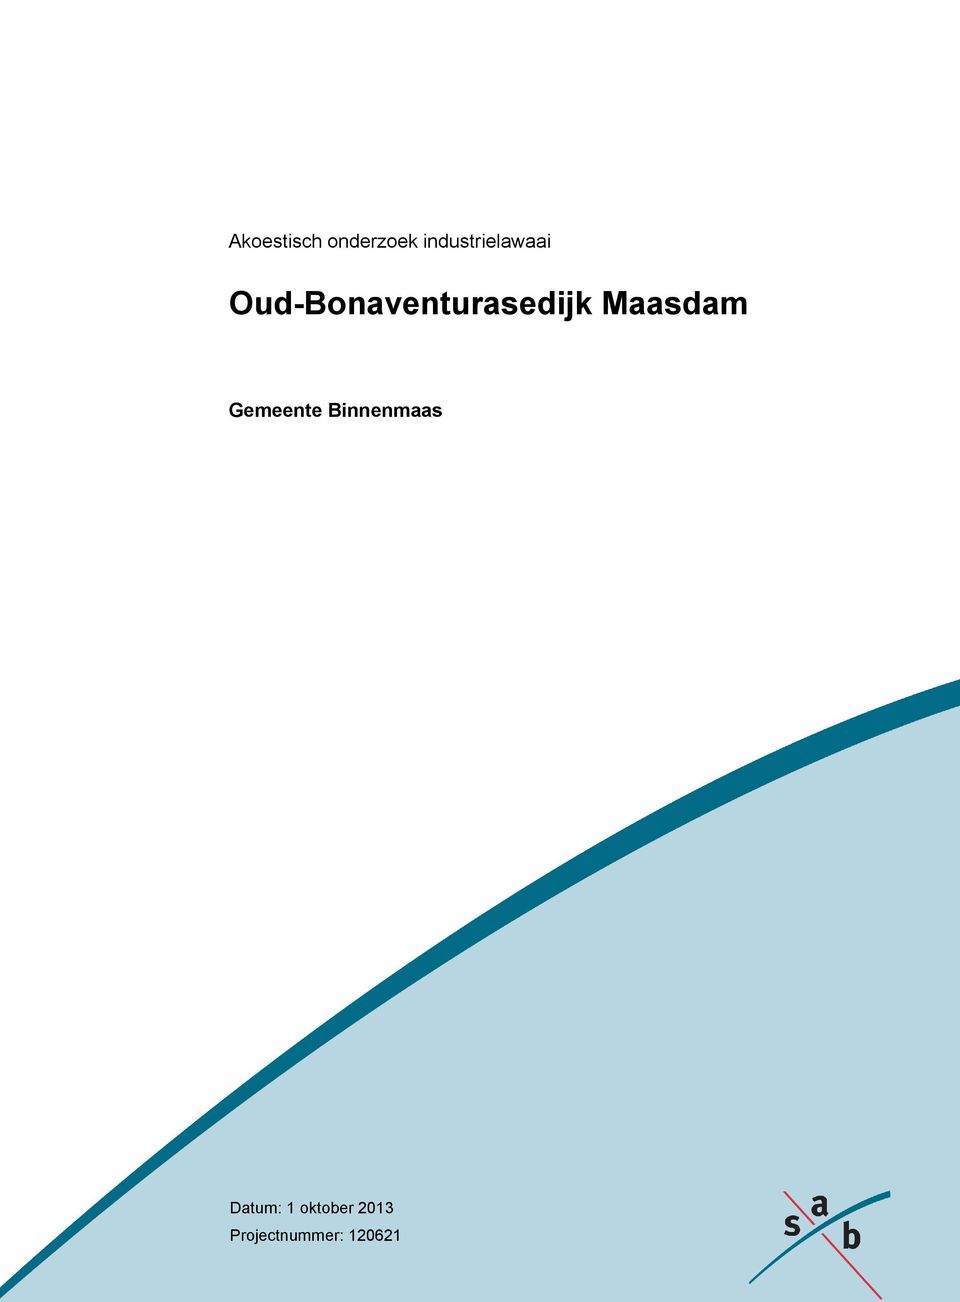 Oud-Bonaventurasedijk Maasdam